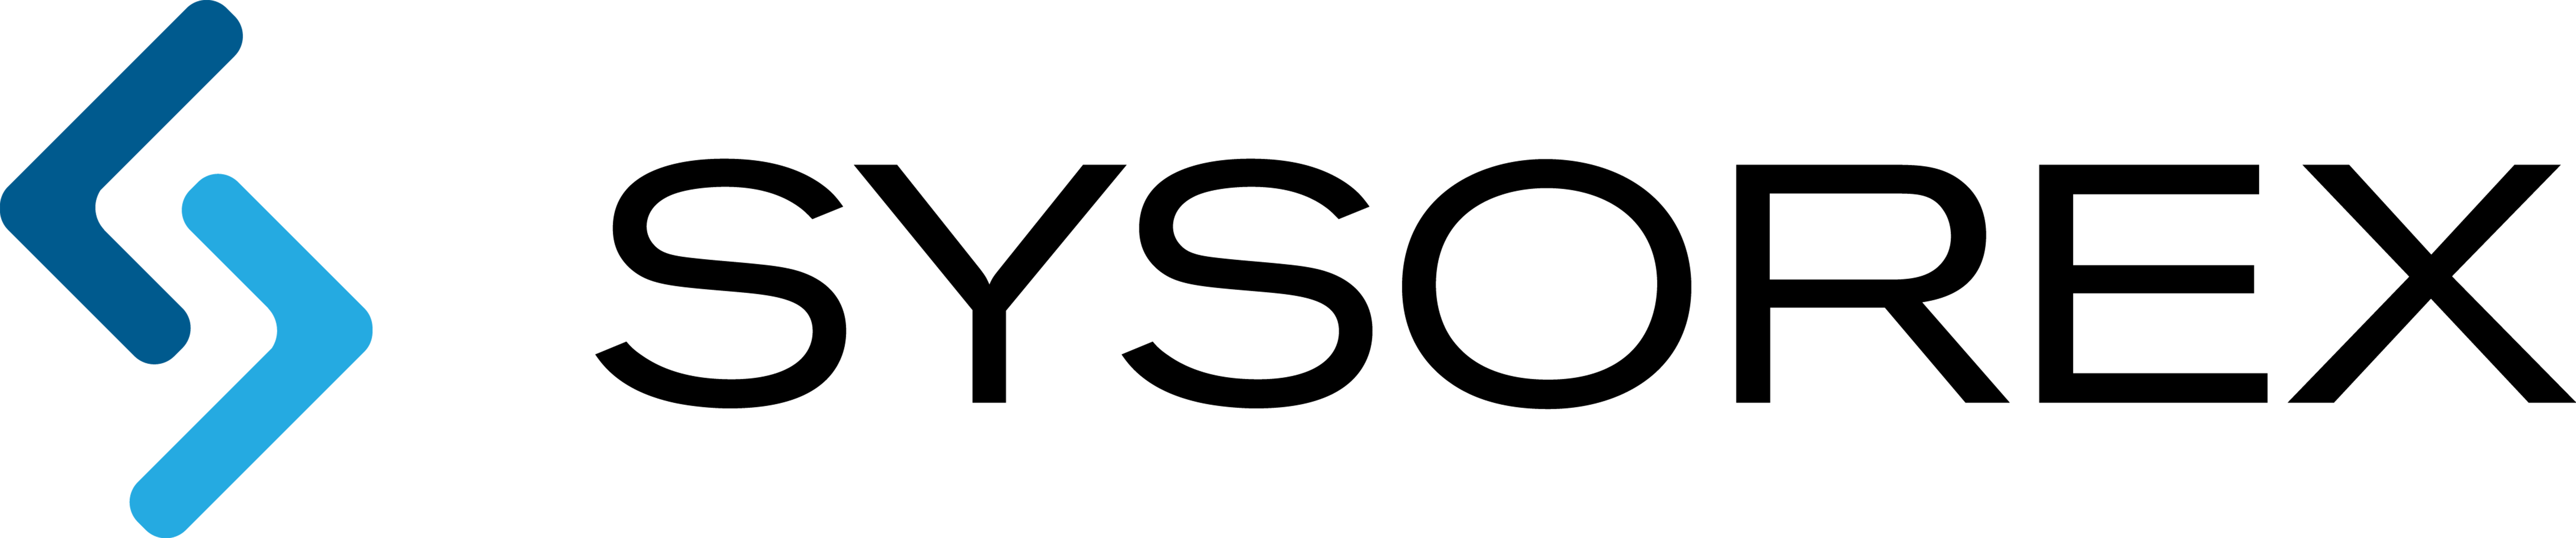 sysorex-logo-retina.png